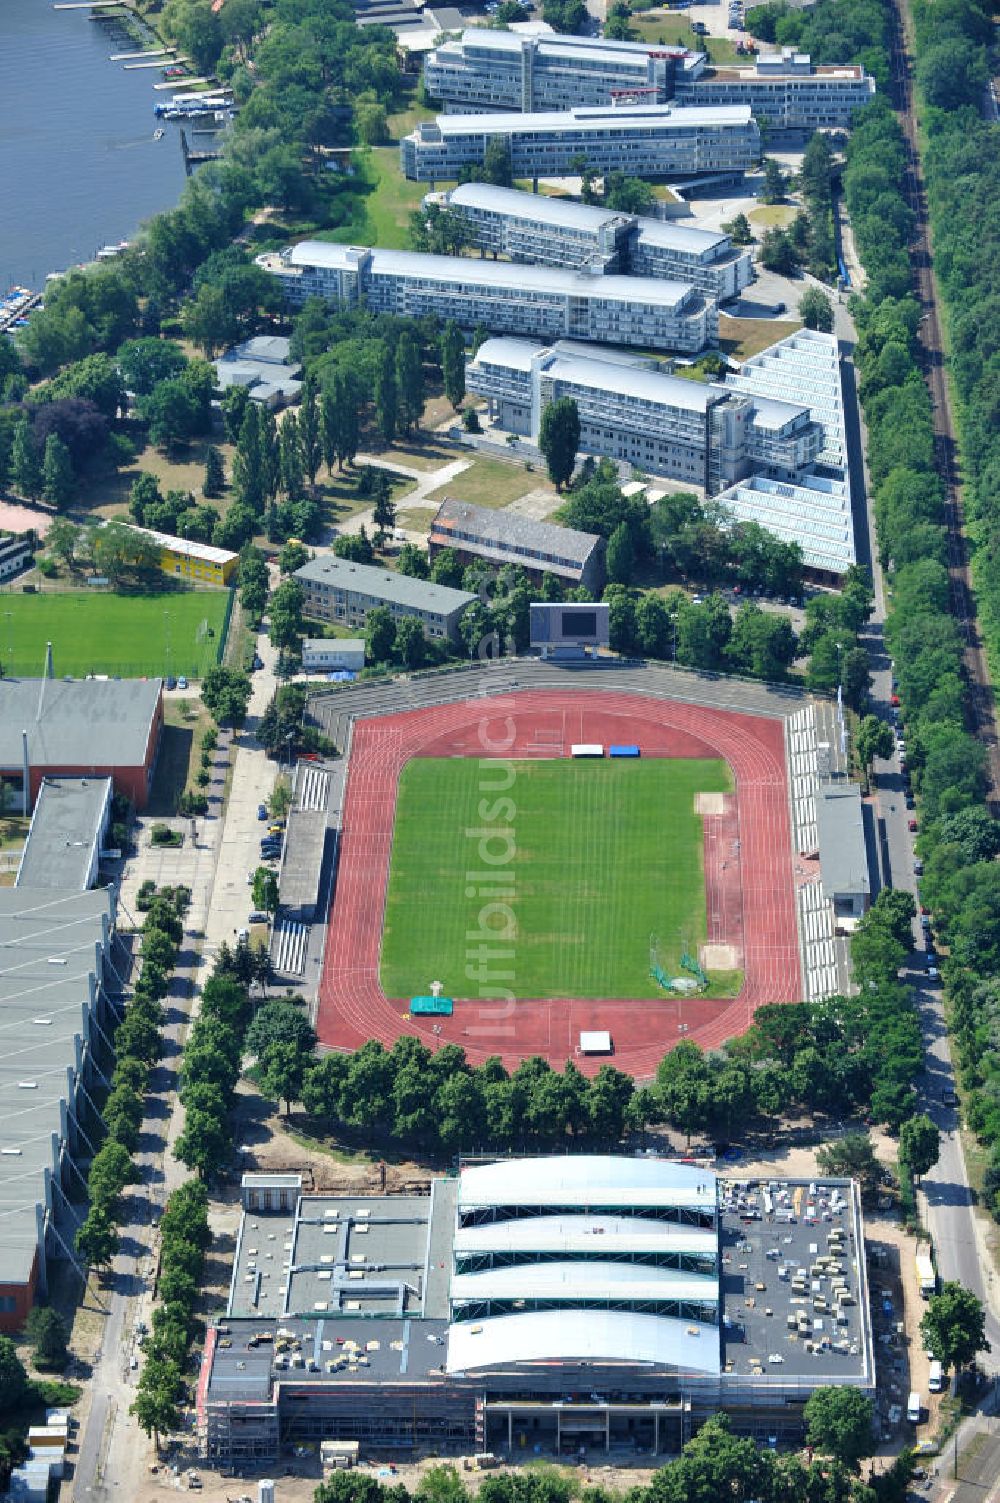 Potsdam von oben - Baustelle der Mehrzweck-Sporthalle am Olympia-Stützpunkt Luftschiffhafen im Südwesten Potsdams